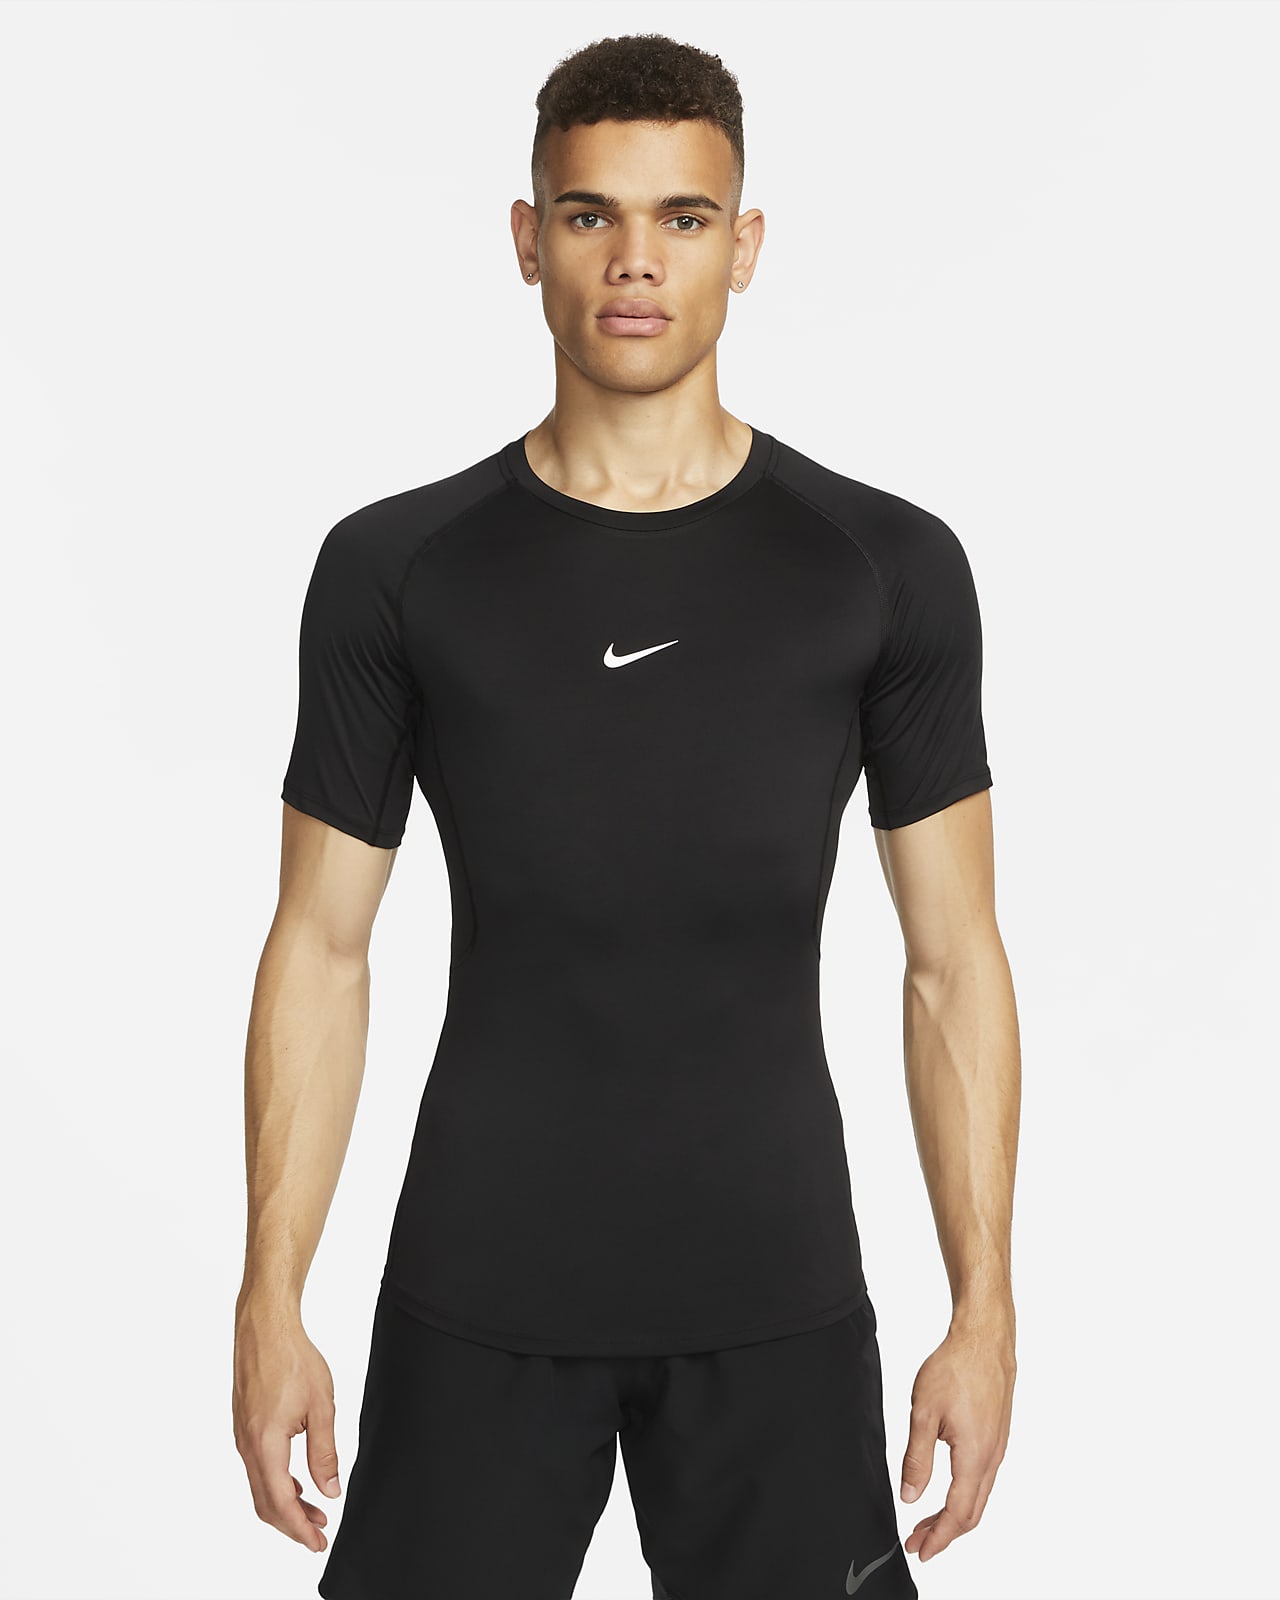 Pánské přiléhavé fitness tričko Dri-FIT Nike Pro s krátkým rukávem